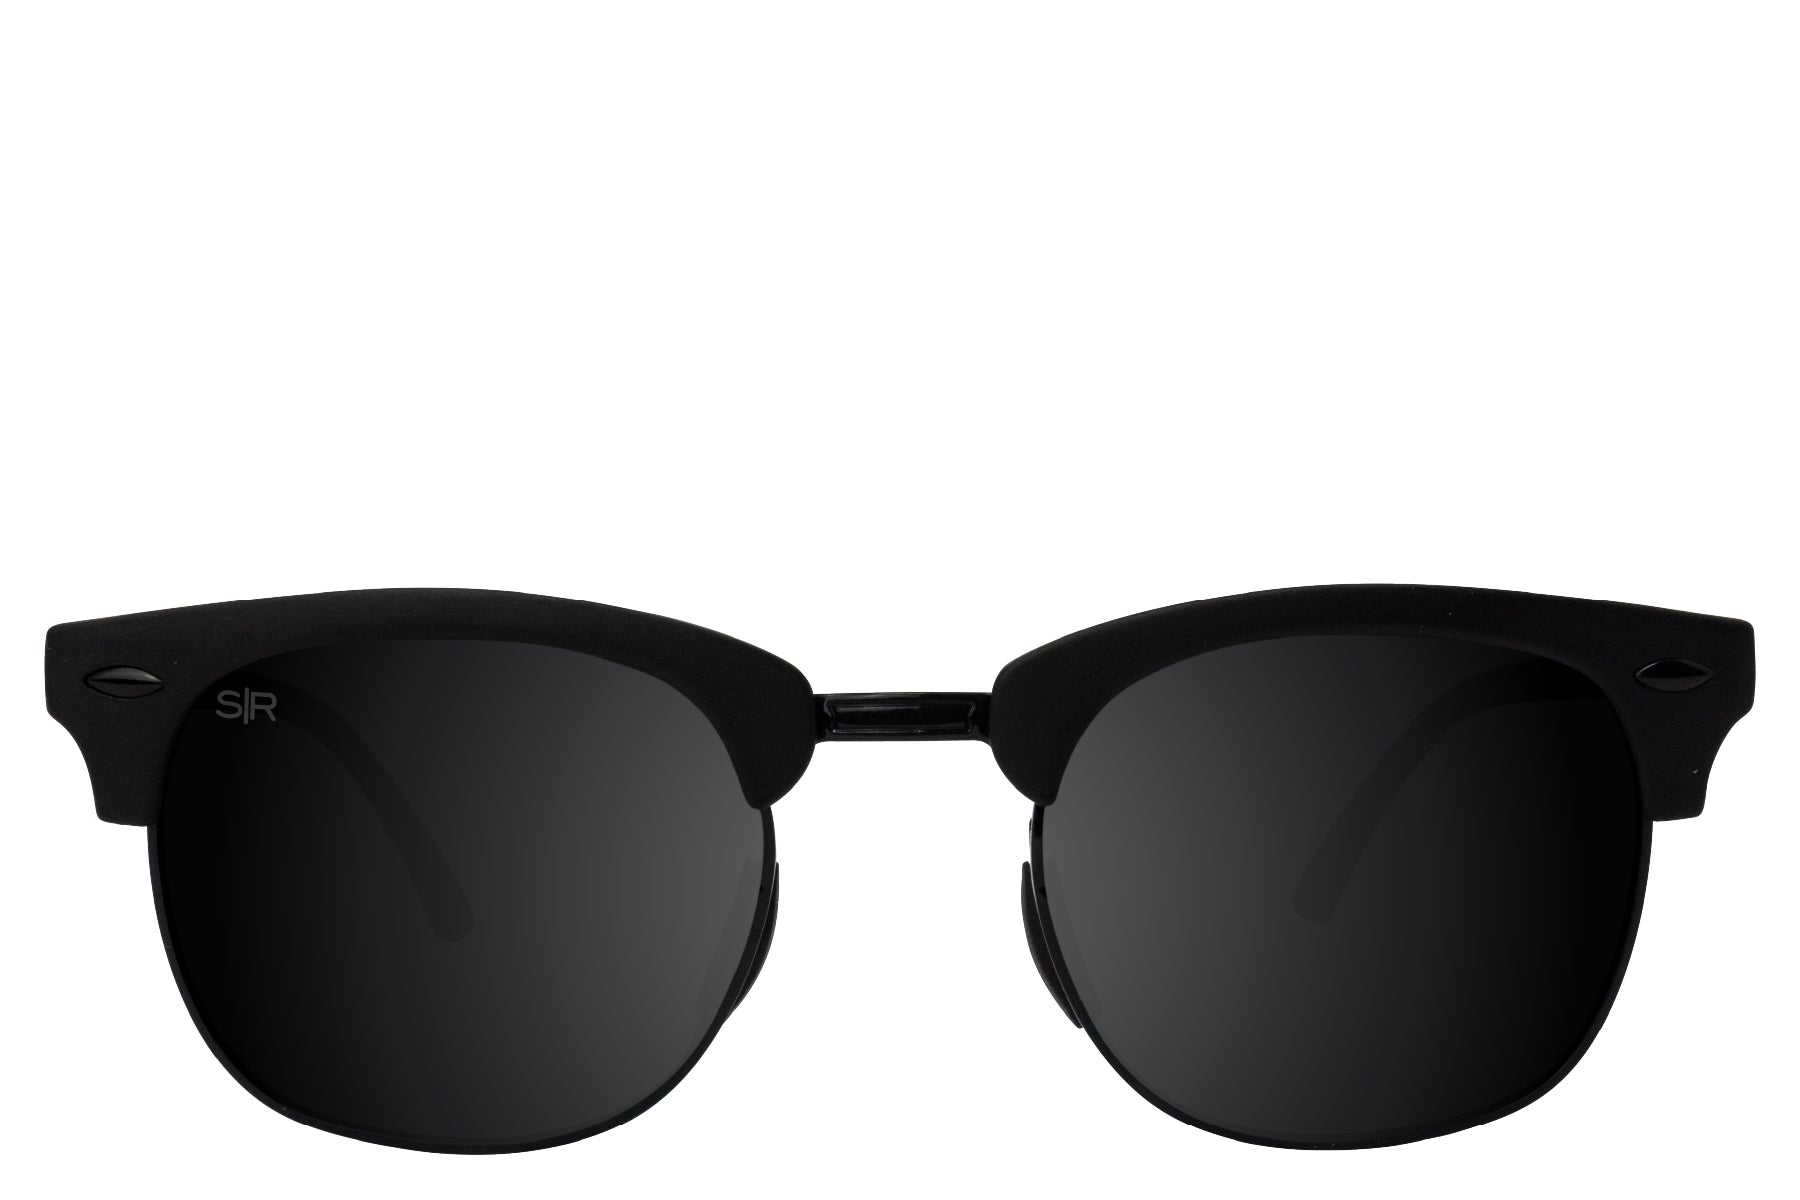 Shady Rays Classic - Oakmont Tortoise Polarized Sunglasses